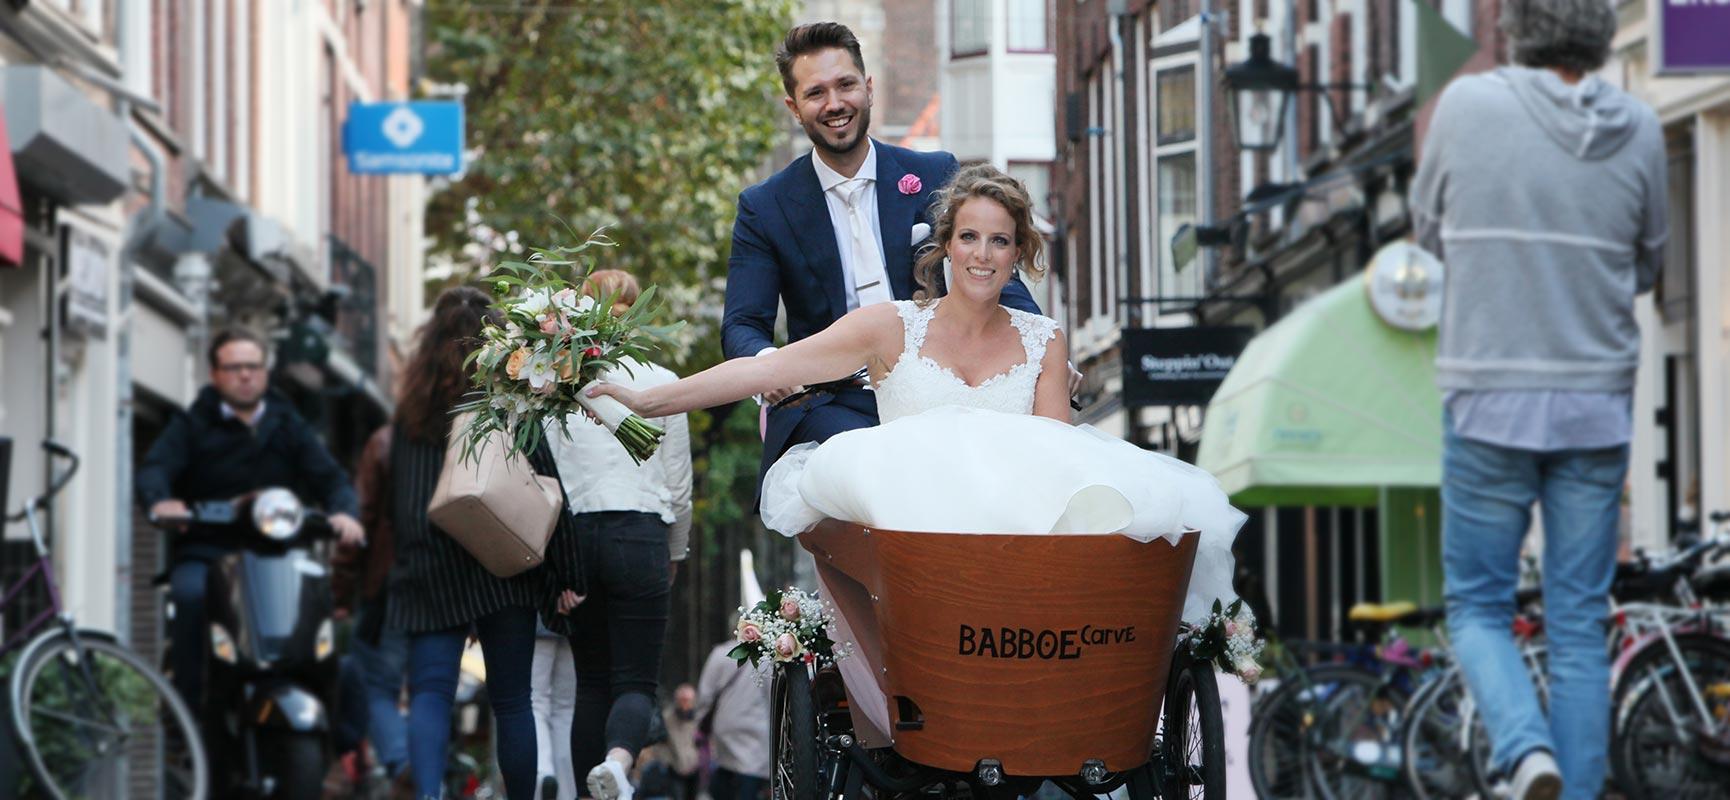 A cargo bike wedding? It's possible!